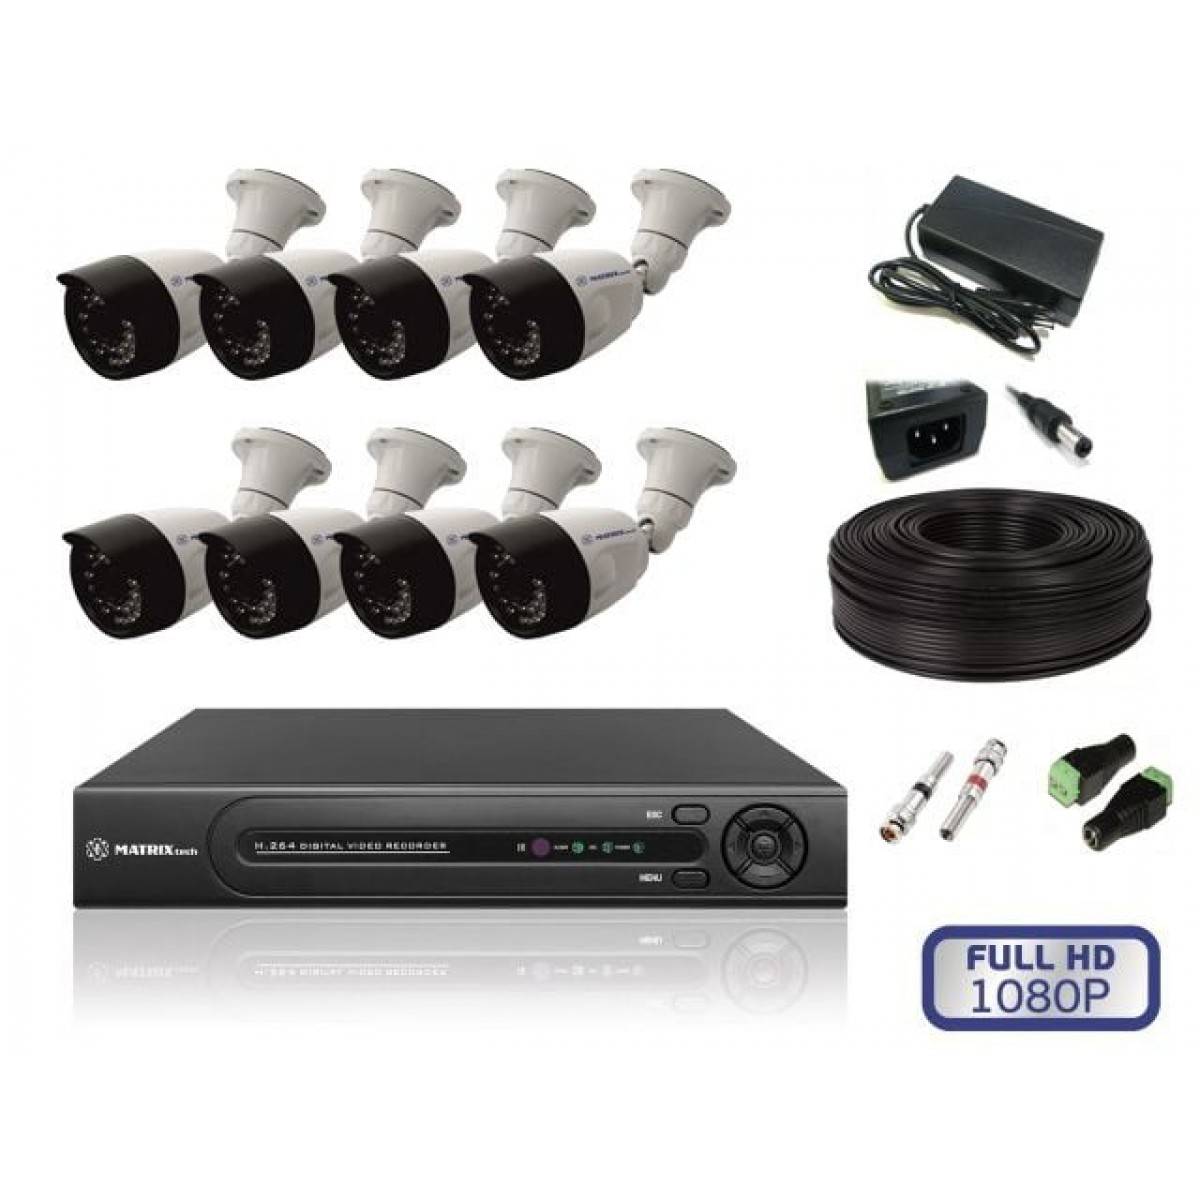 Готовые комплекты беспроводные. Комплект видеонаблюдения Eseeco ahd4013 4 камеры. Комплект видеонаблюдения Hikvision на 8 камер. Комплект видеонаблюдения DVR 7204c1 с 4 видеокамерами. Комплект видеонаблюдения Hikvision на 4 камеры IP.